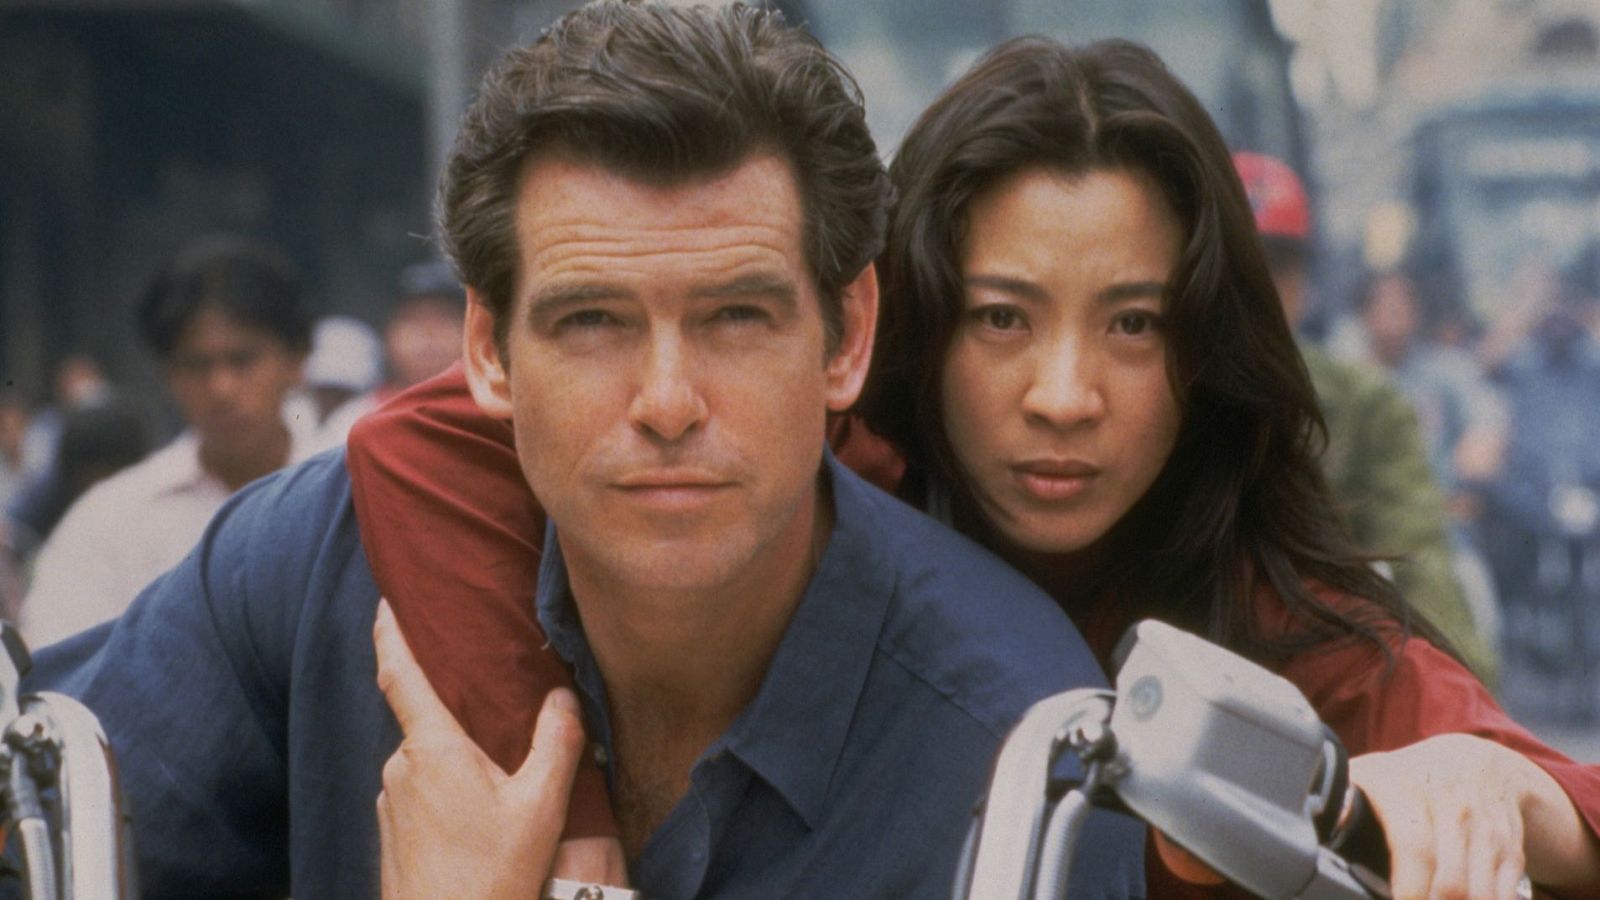 'El mañana nunca muere', Pierce Brosnan y Michelle Yeoh, como 007 y la chica Bond